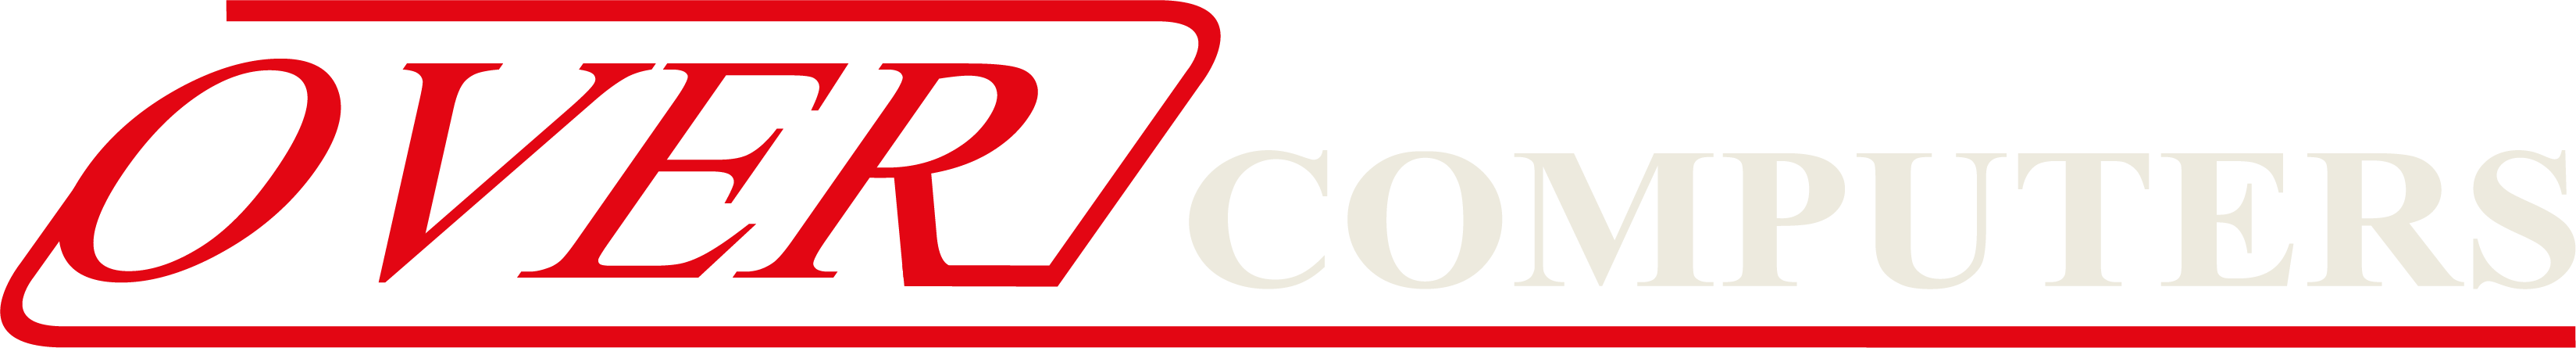 logo over